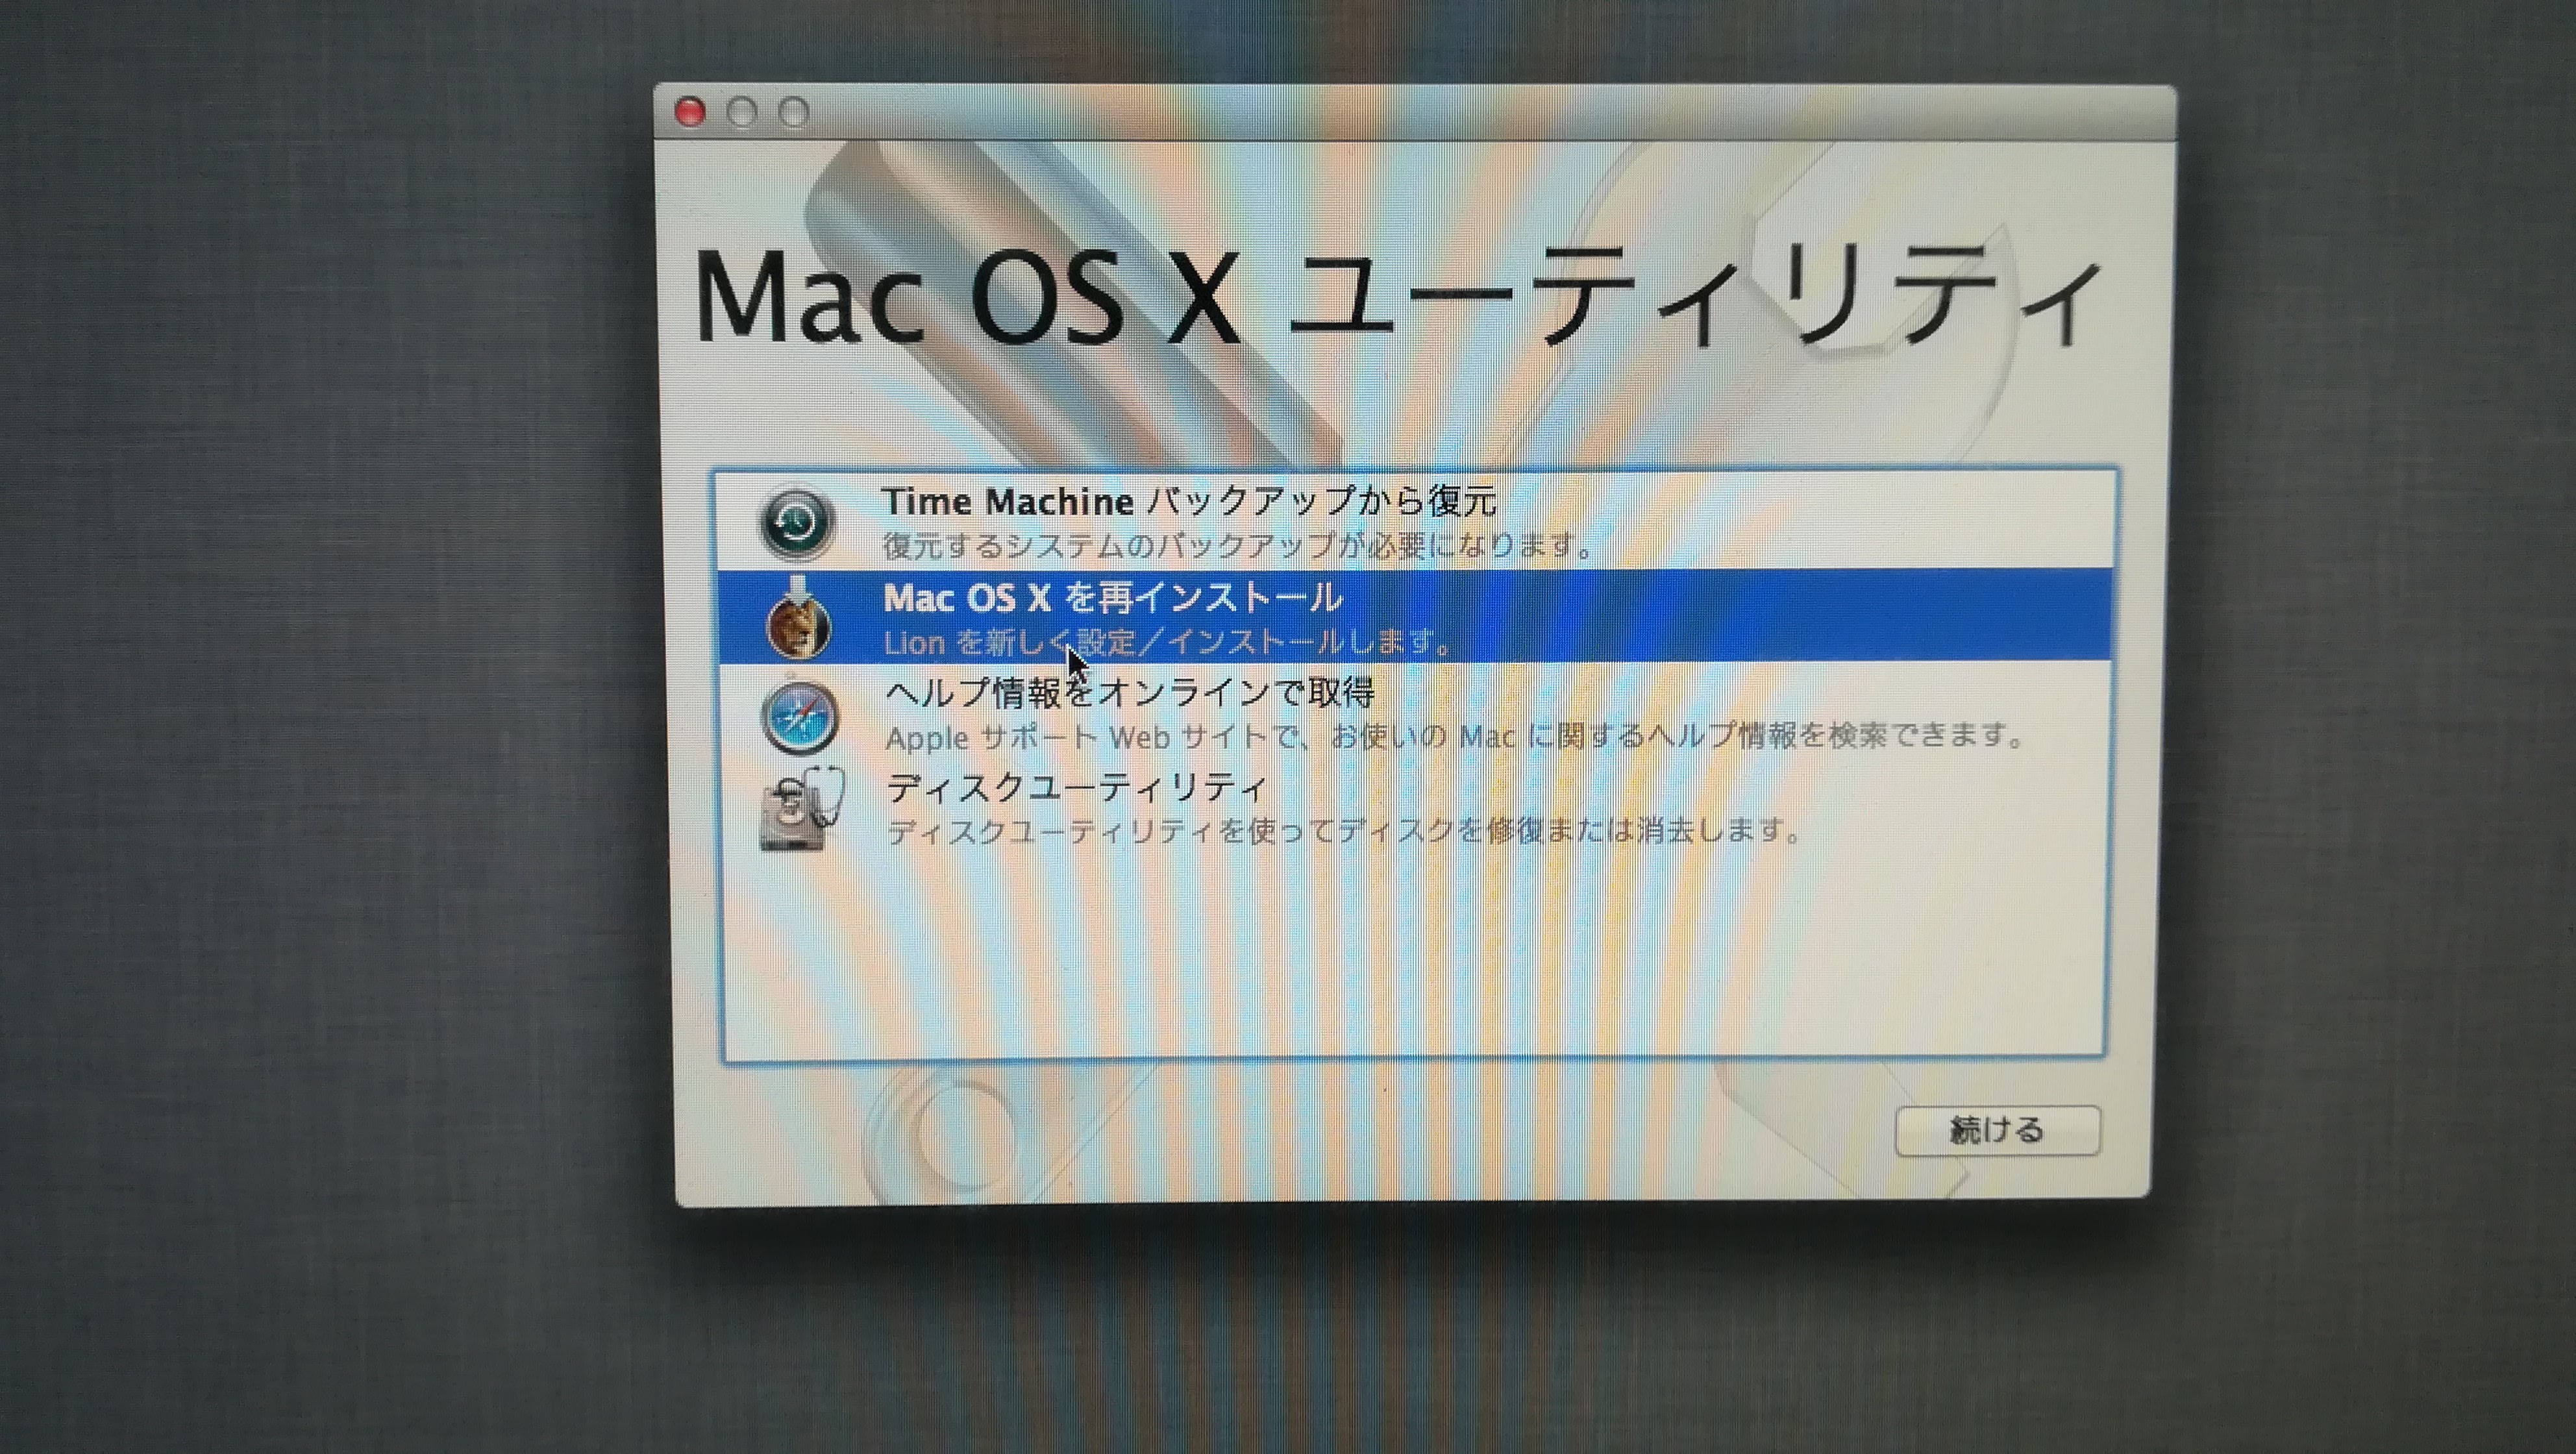 Mac OS X 再インストールができ… - Apple コミュニティ